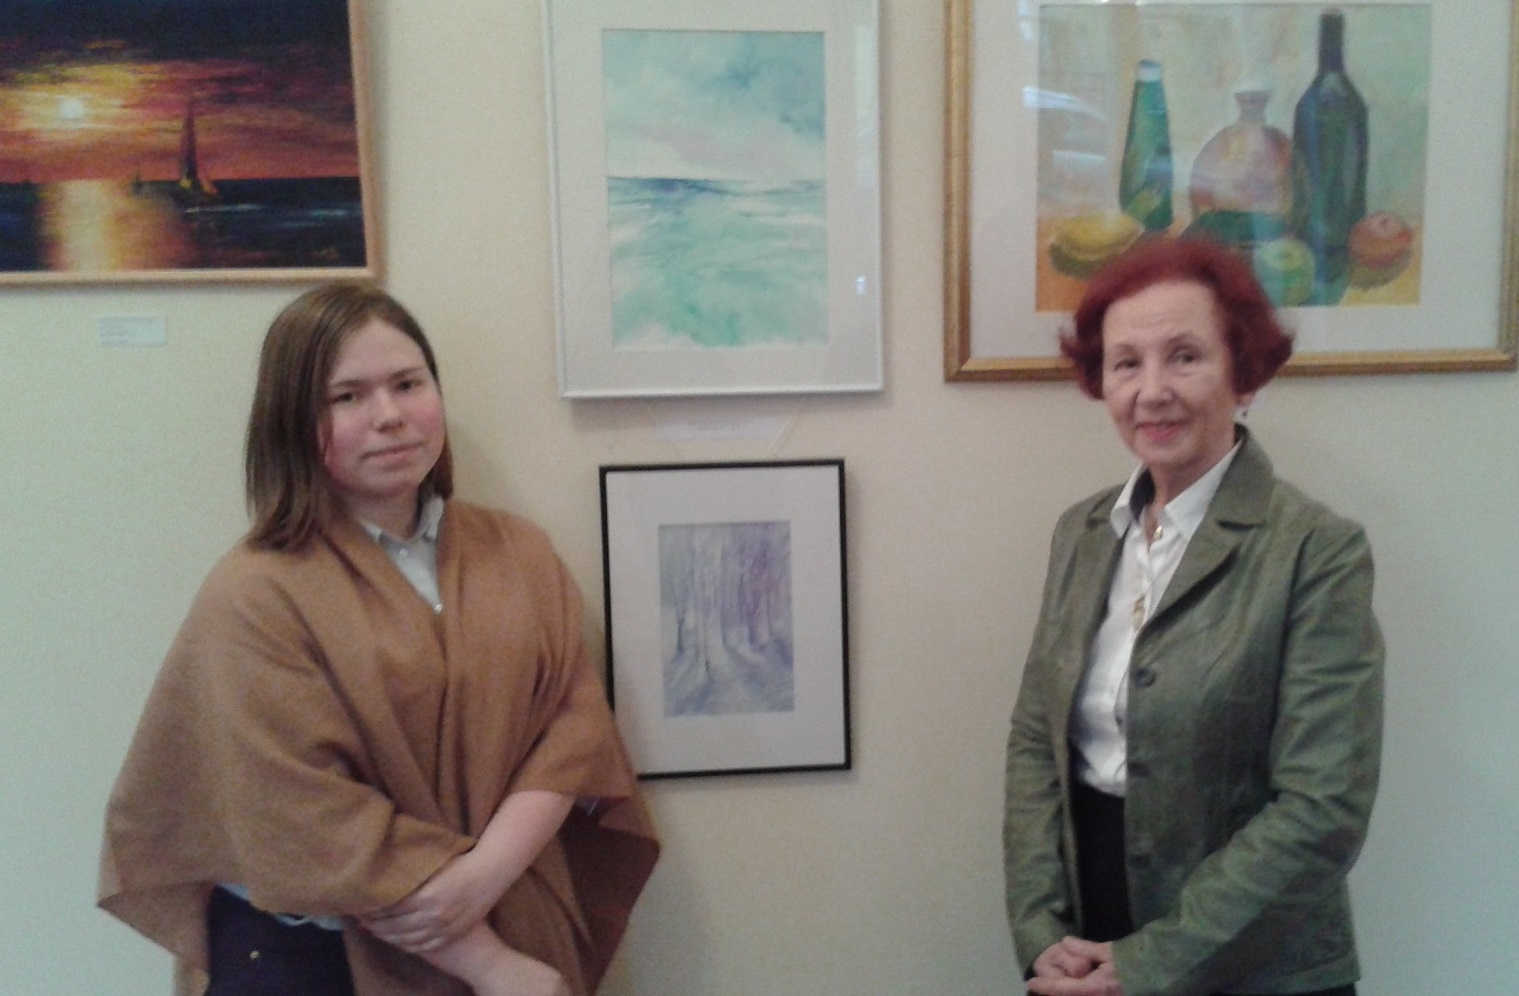 Koolikunsti näitus Vene Kultuurikeskuses. Feebruar 2015.